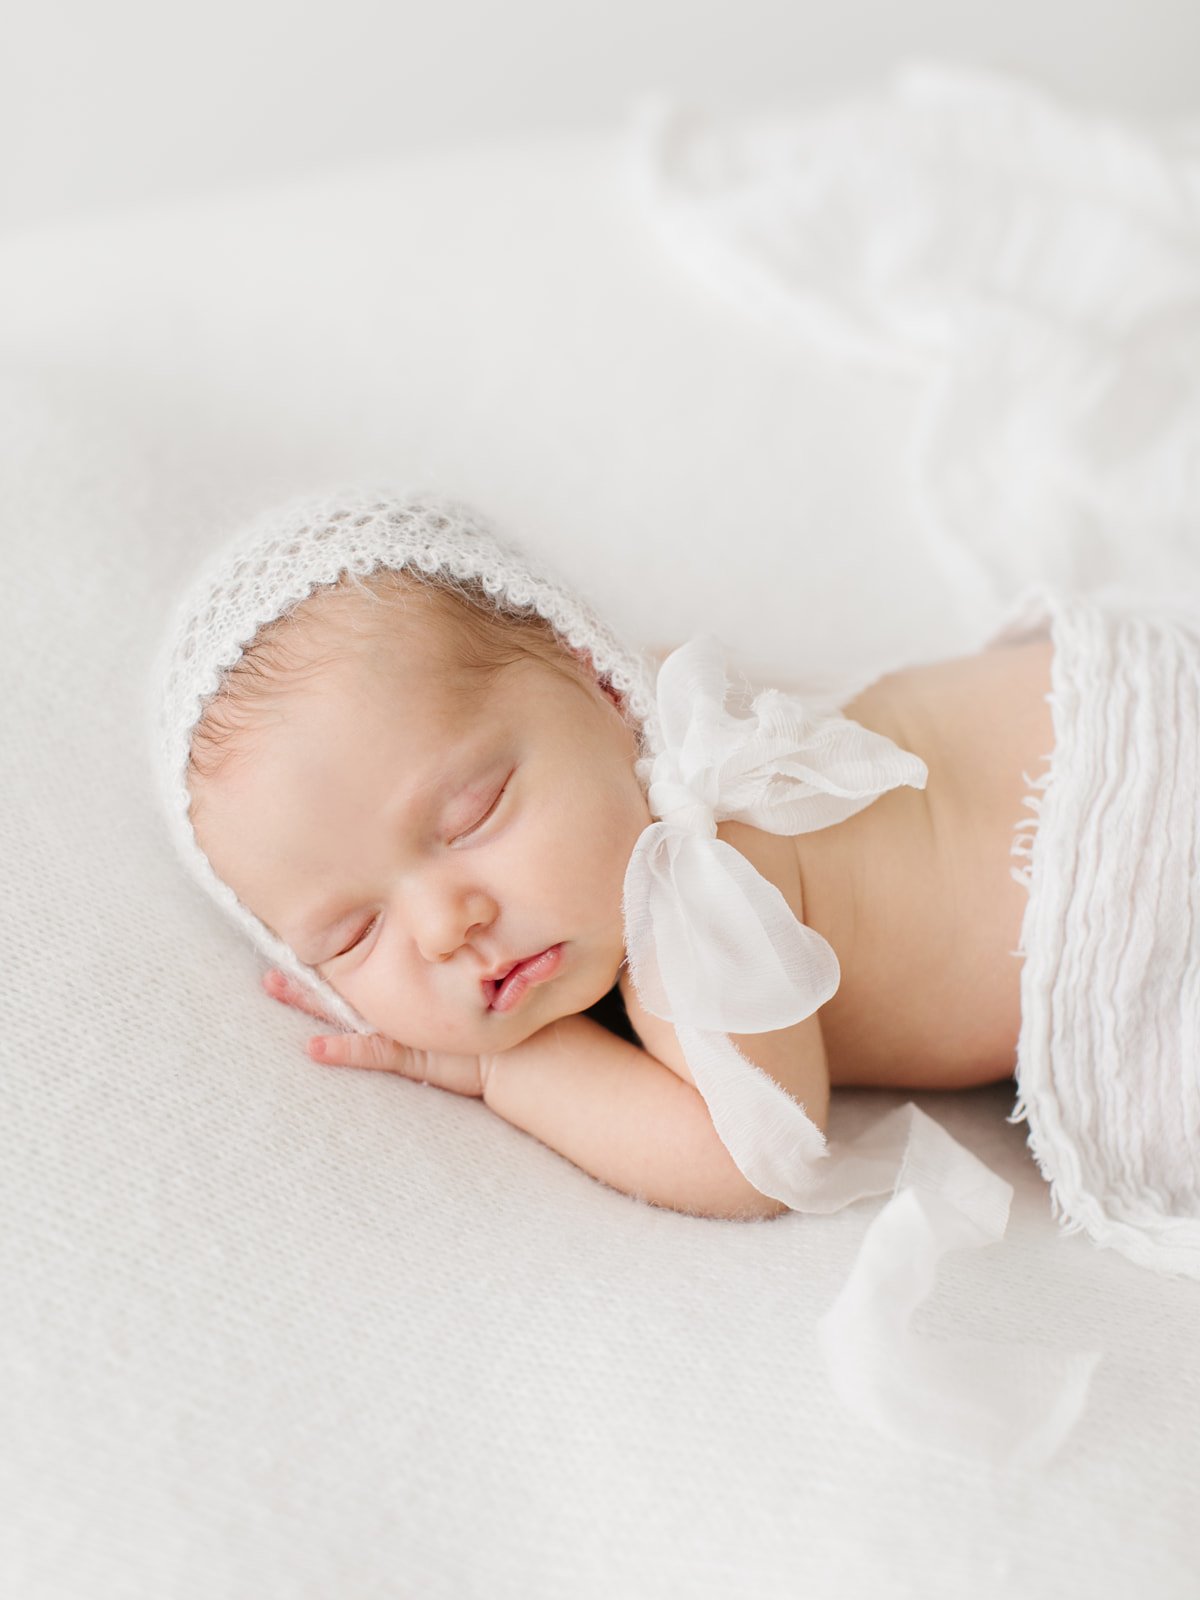 Natürliche Neugeborenen Fotografie